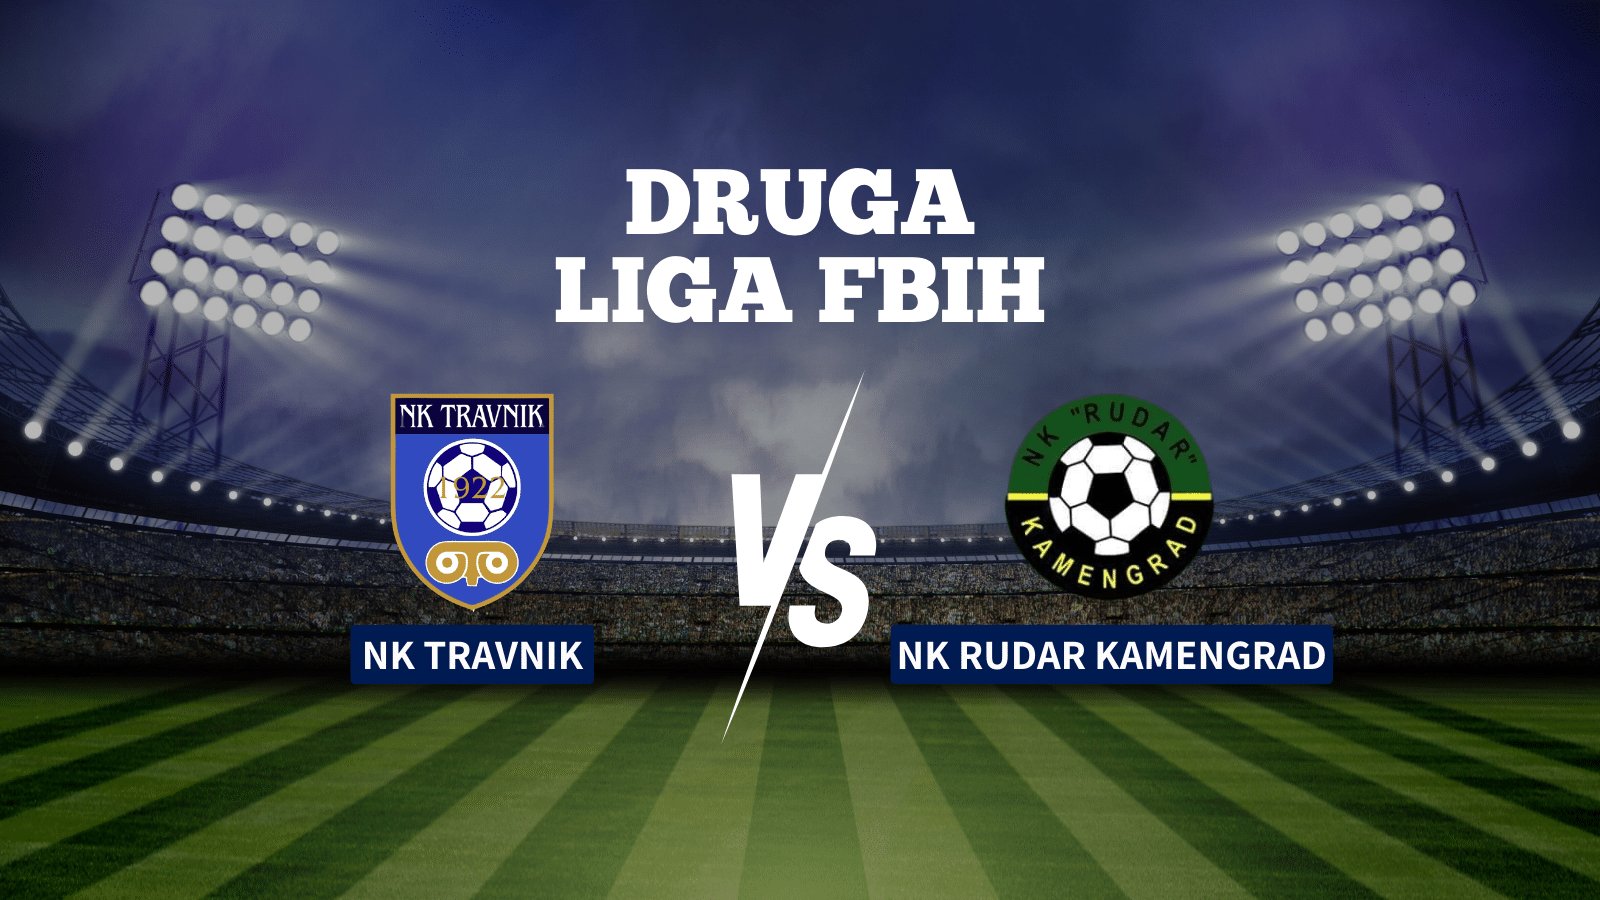 Uzbudljiv vikend u Drugoj ligi FBiH: NK TRAVNIK – NK RUDAR KAMENGRAD